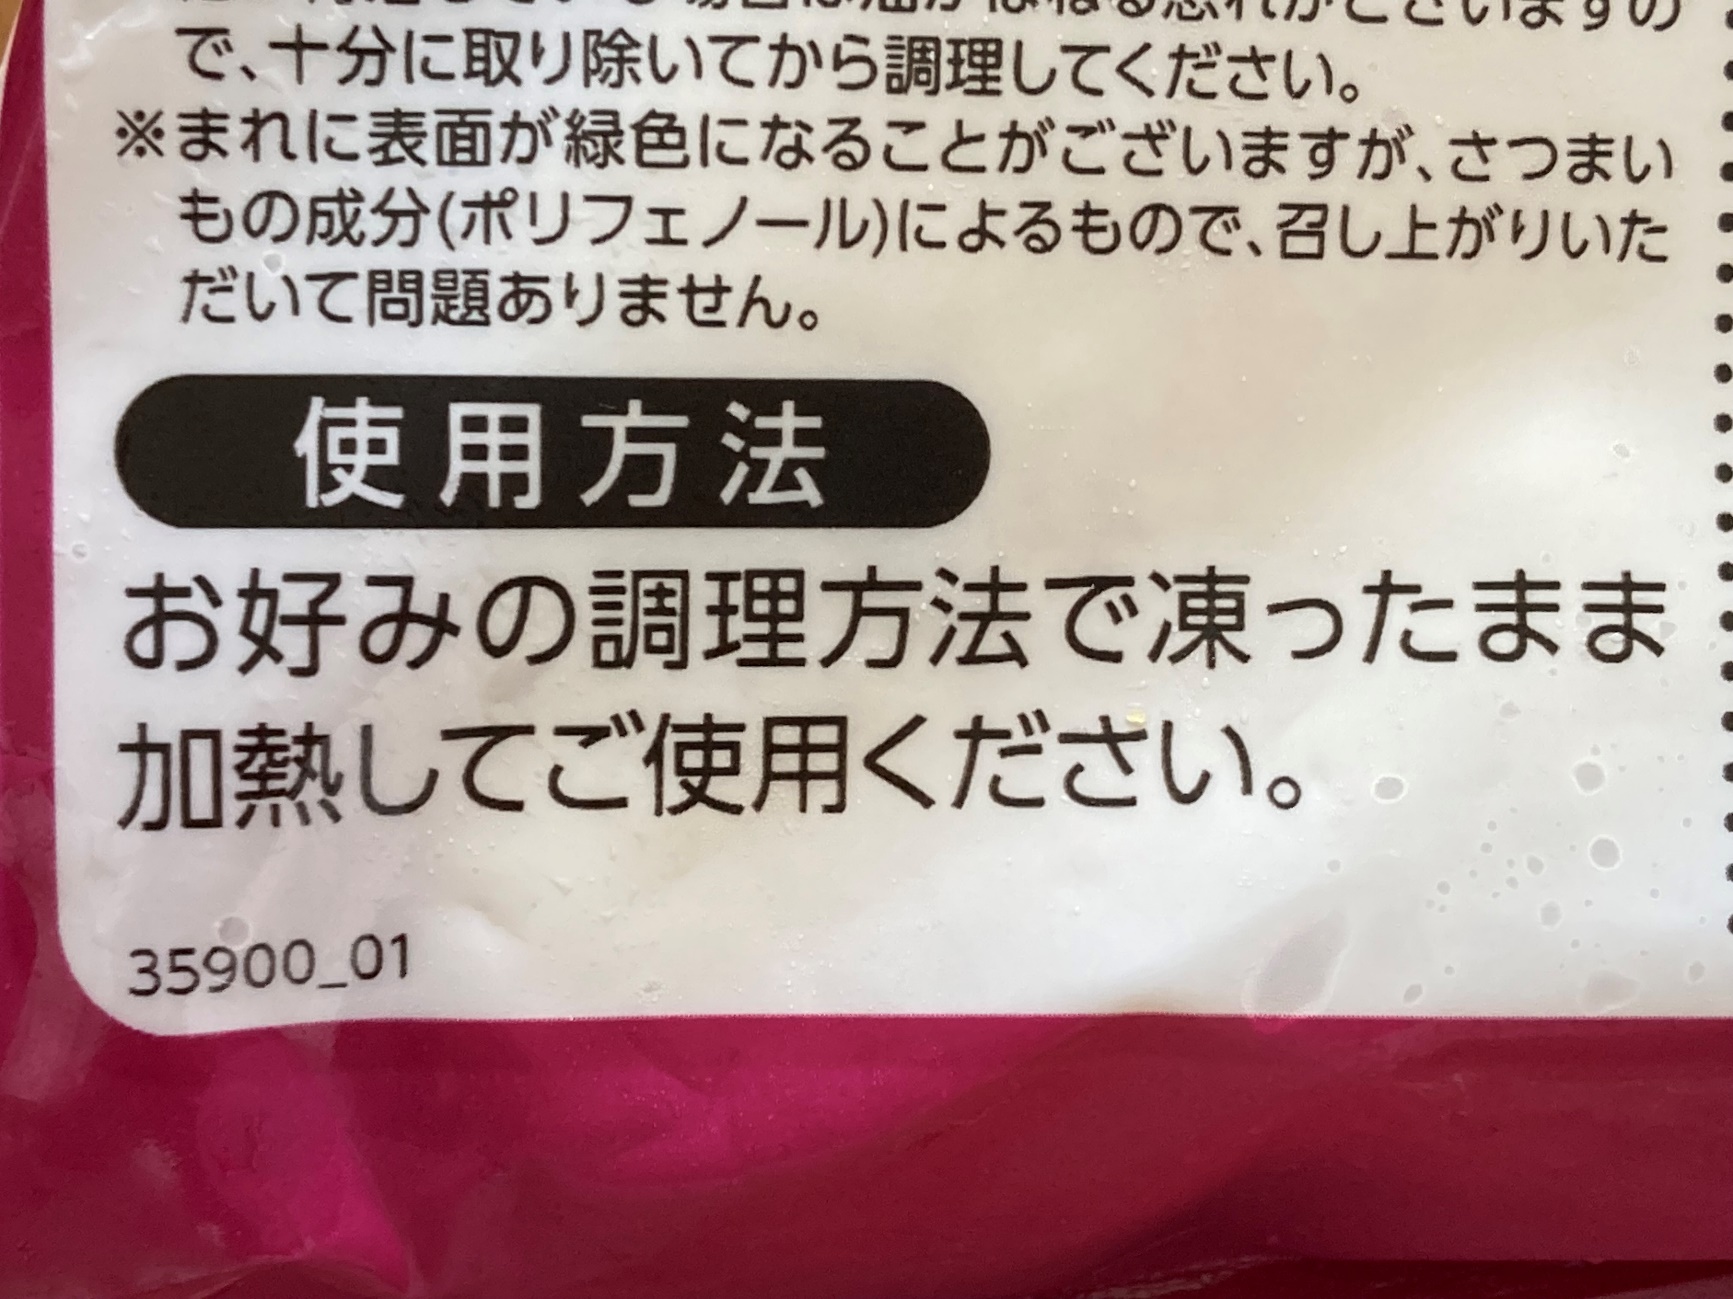 業務スーパーの天ぷら用さつまいもパッケージ裏面に記載されている使用方法